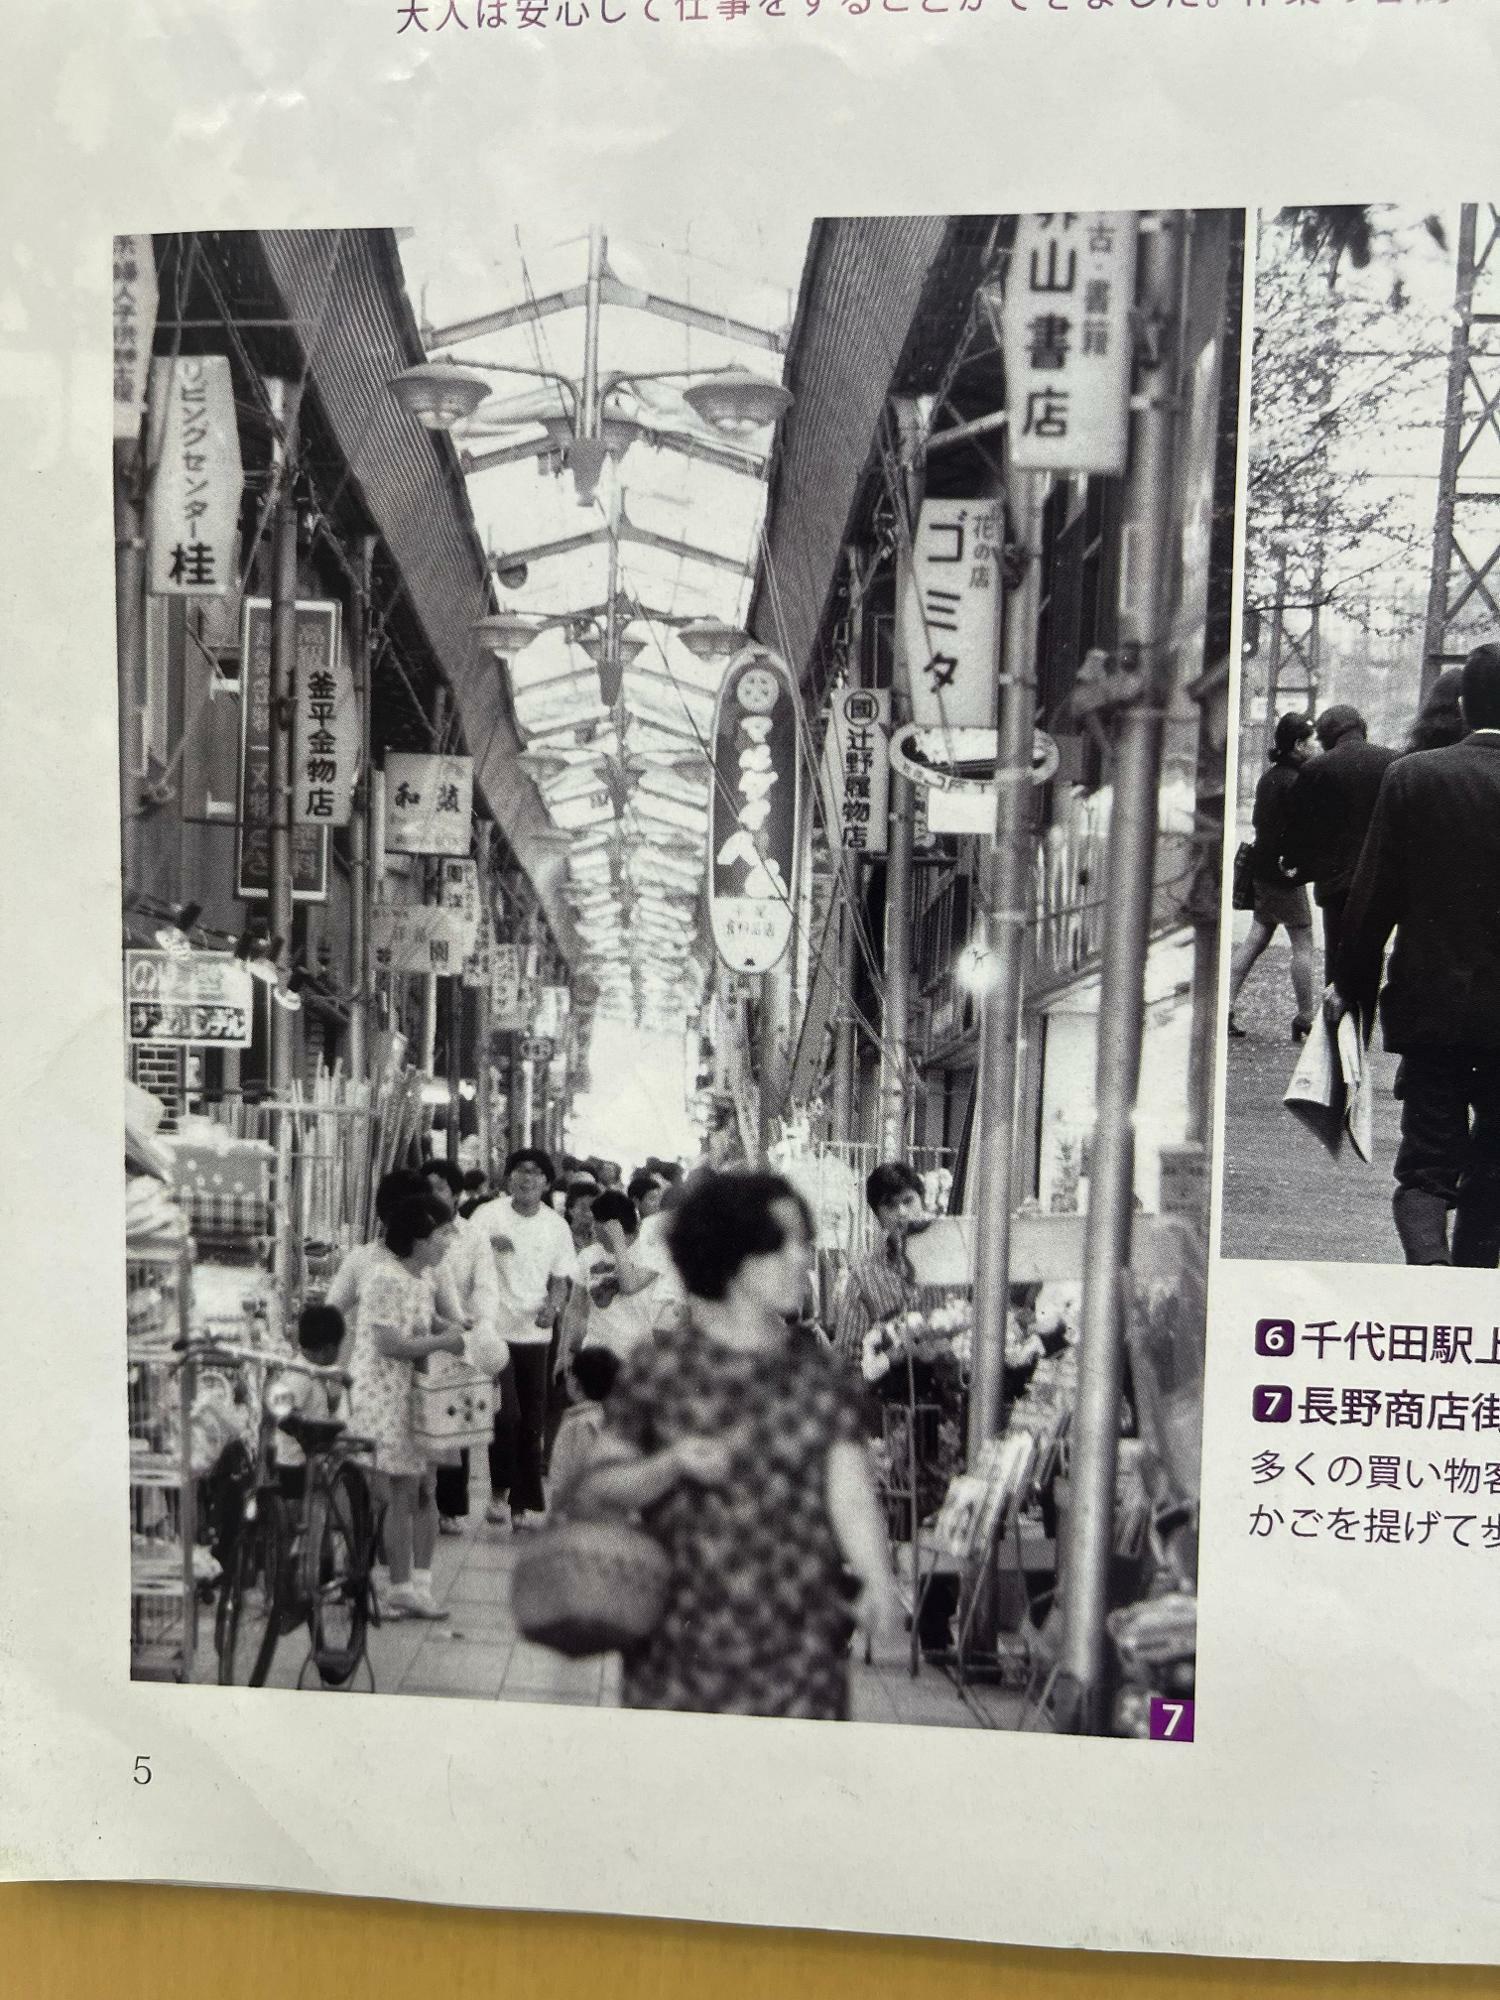 画像は図書館の資料で見つけた昔の長野商店街の様子